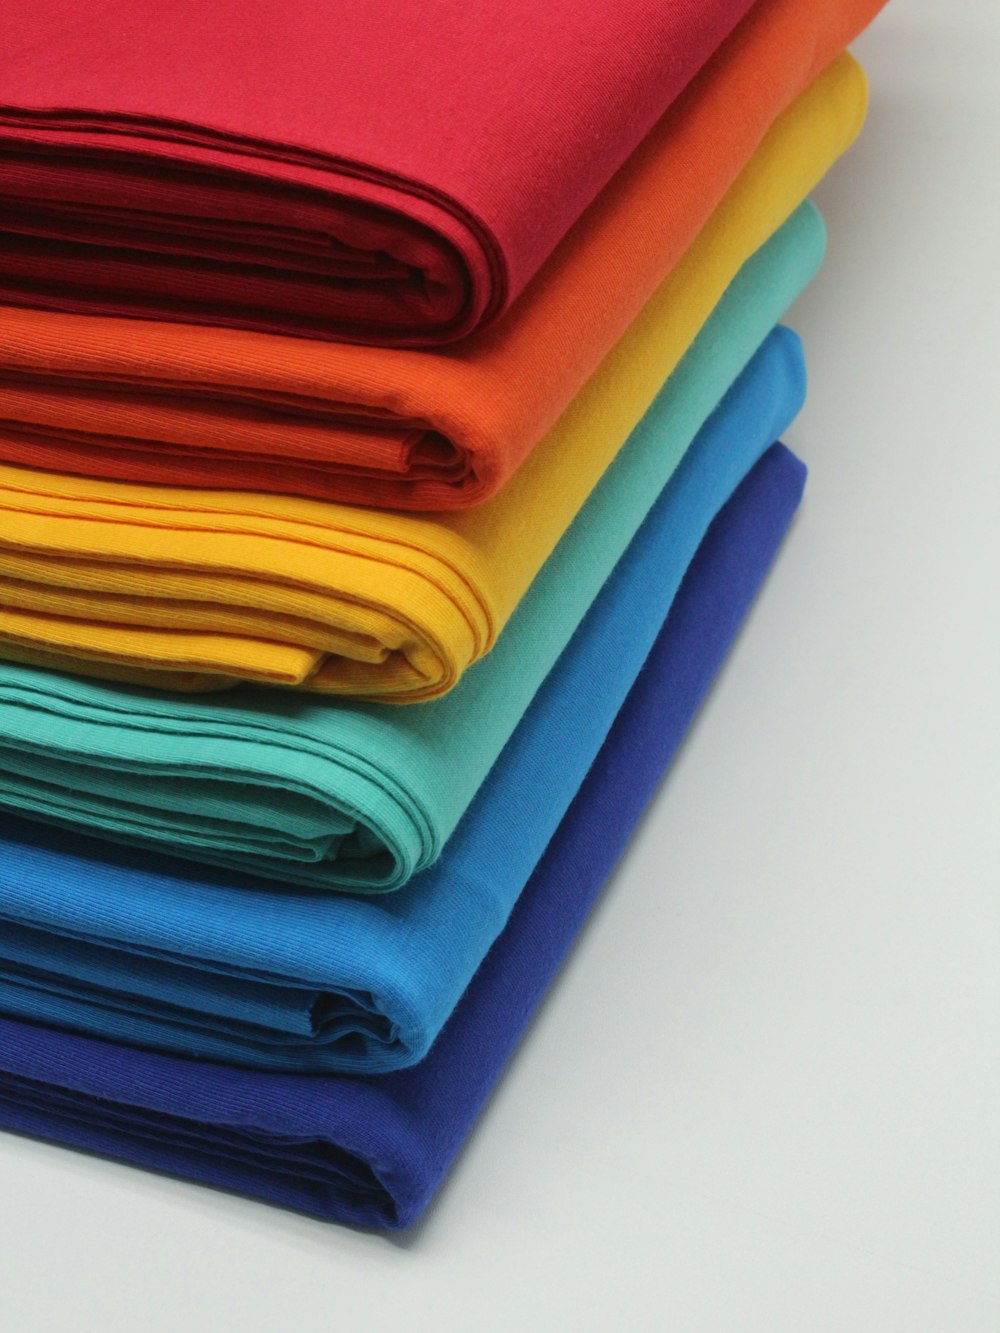 una pila de telas de colores brillantes sobre una superficie blanca